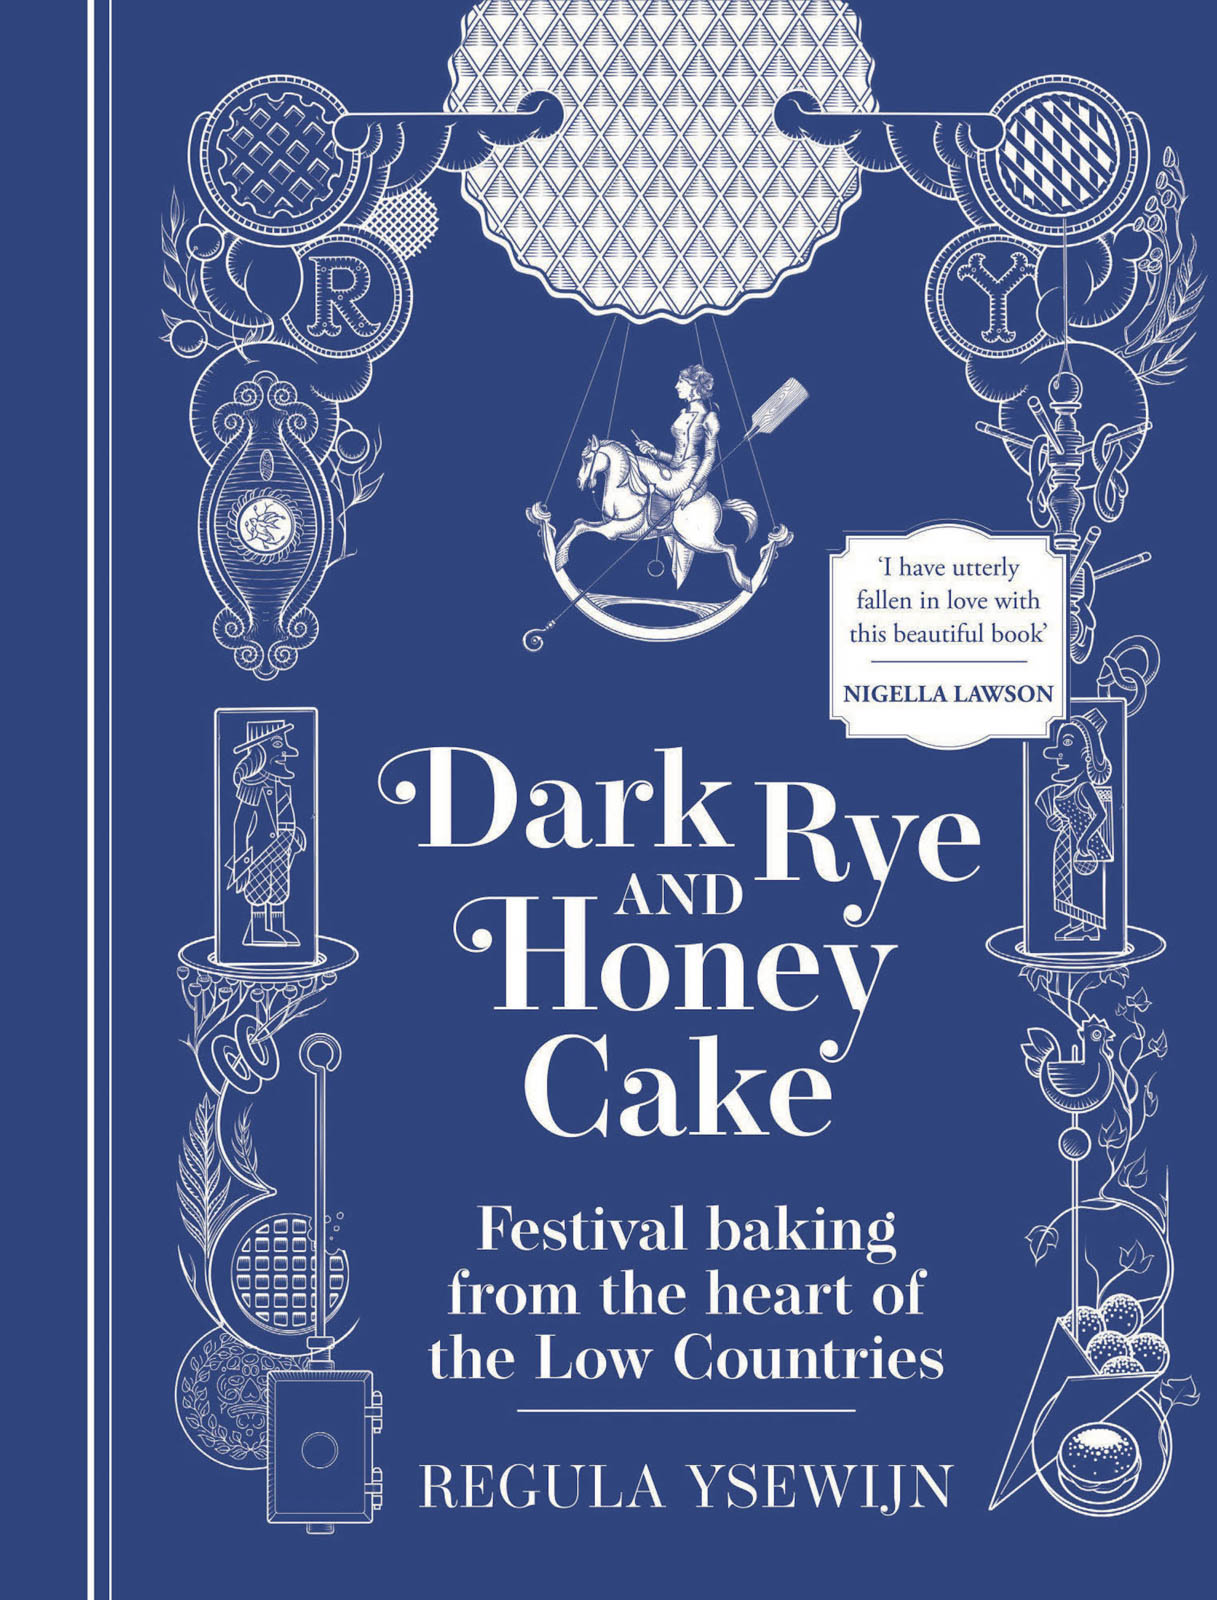 Dark Rye & Honey Cake by Regula Ysewijn